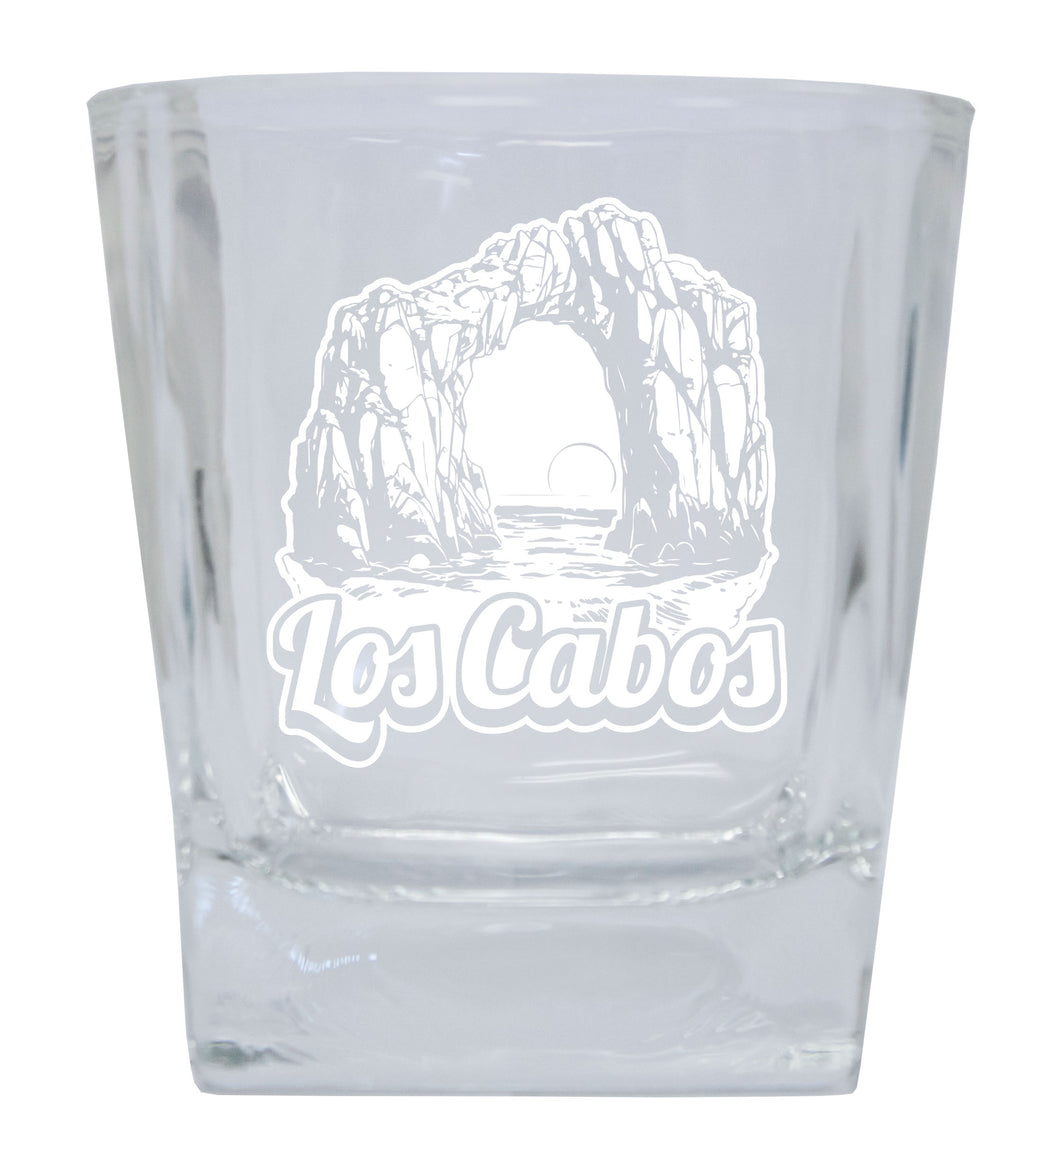 Los Cabos Mexico Souvenir 5 oz Engraved Shooter Glass